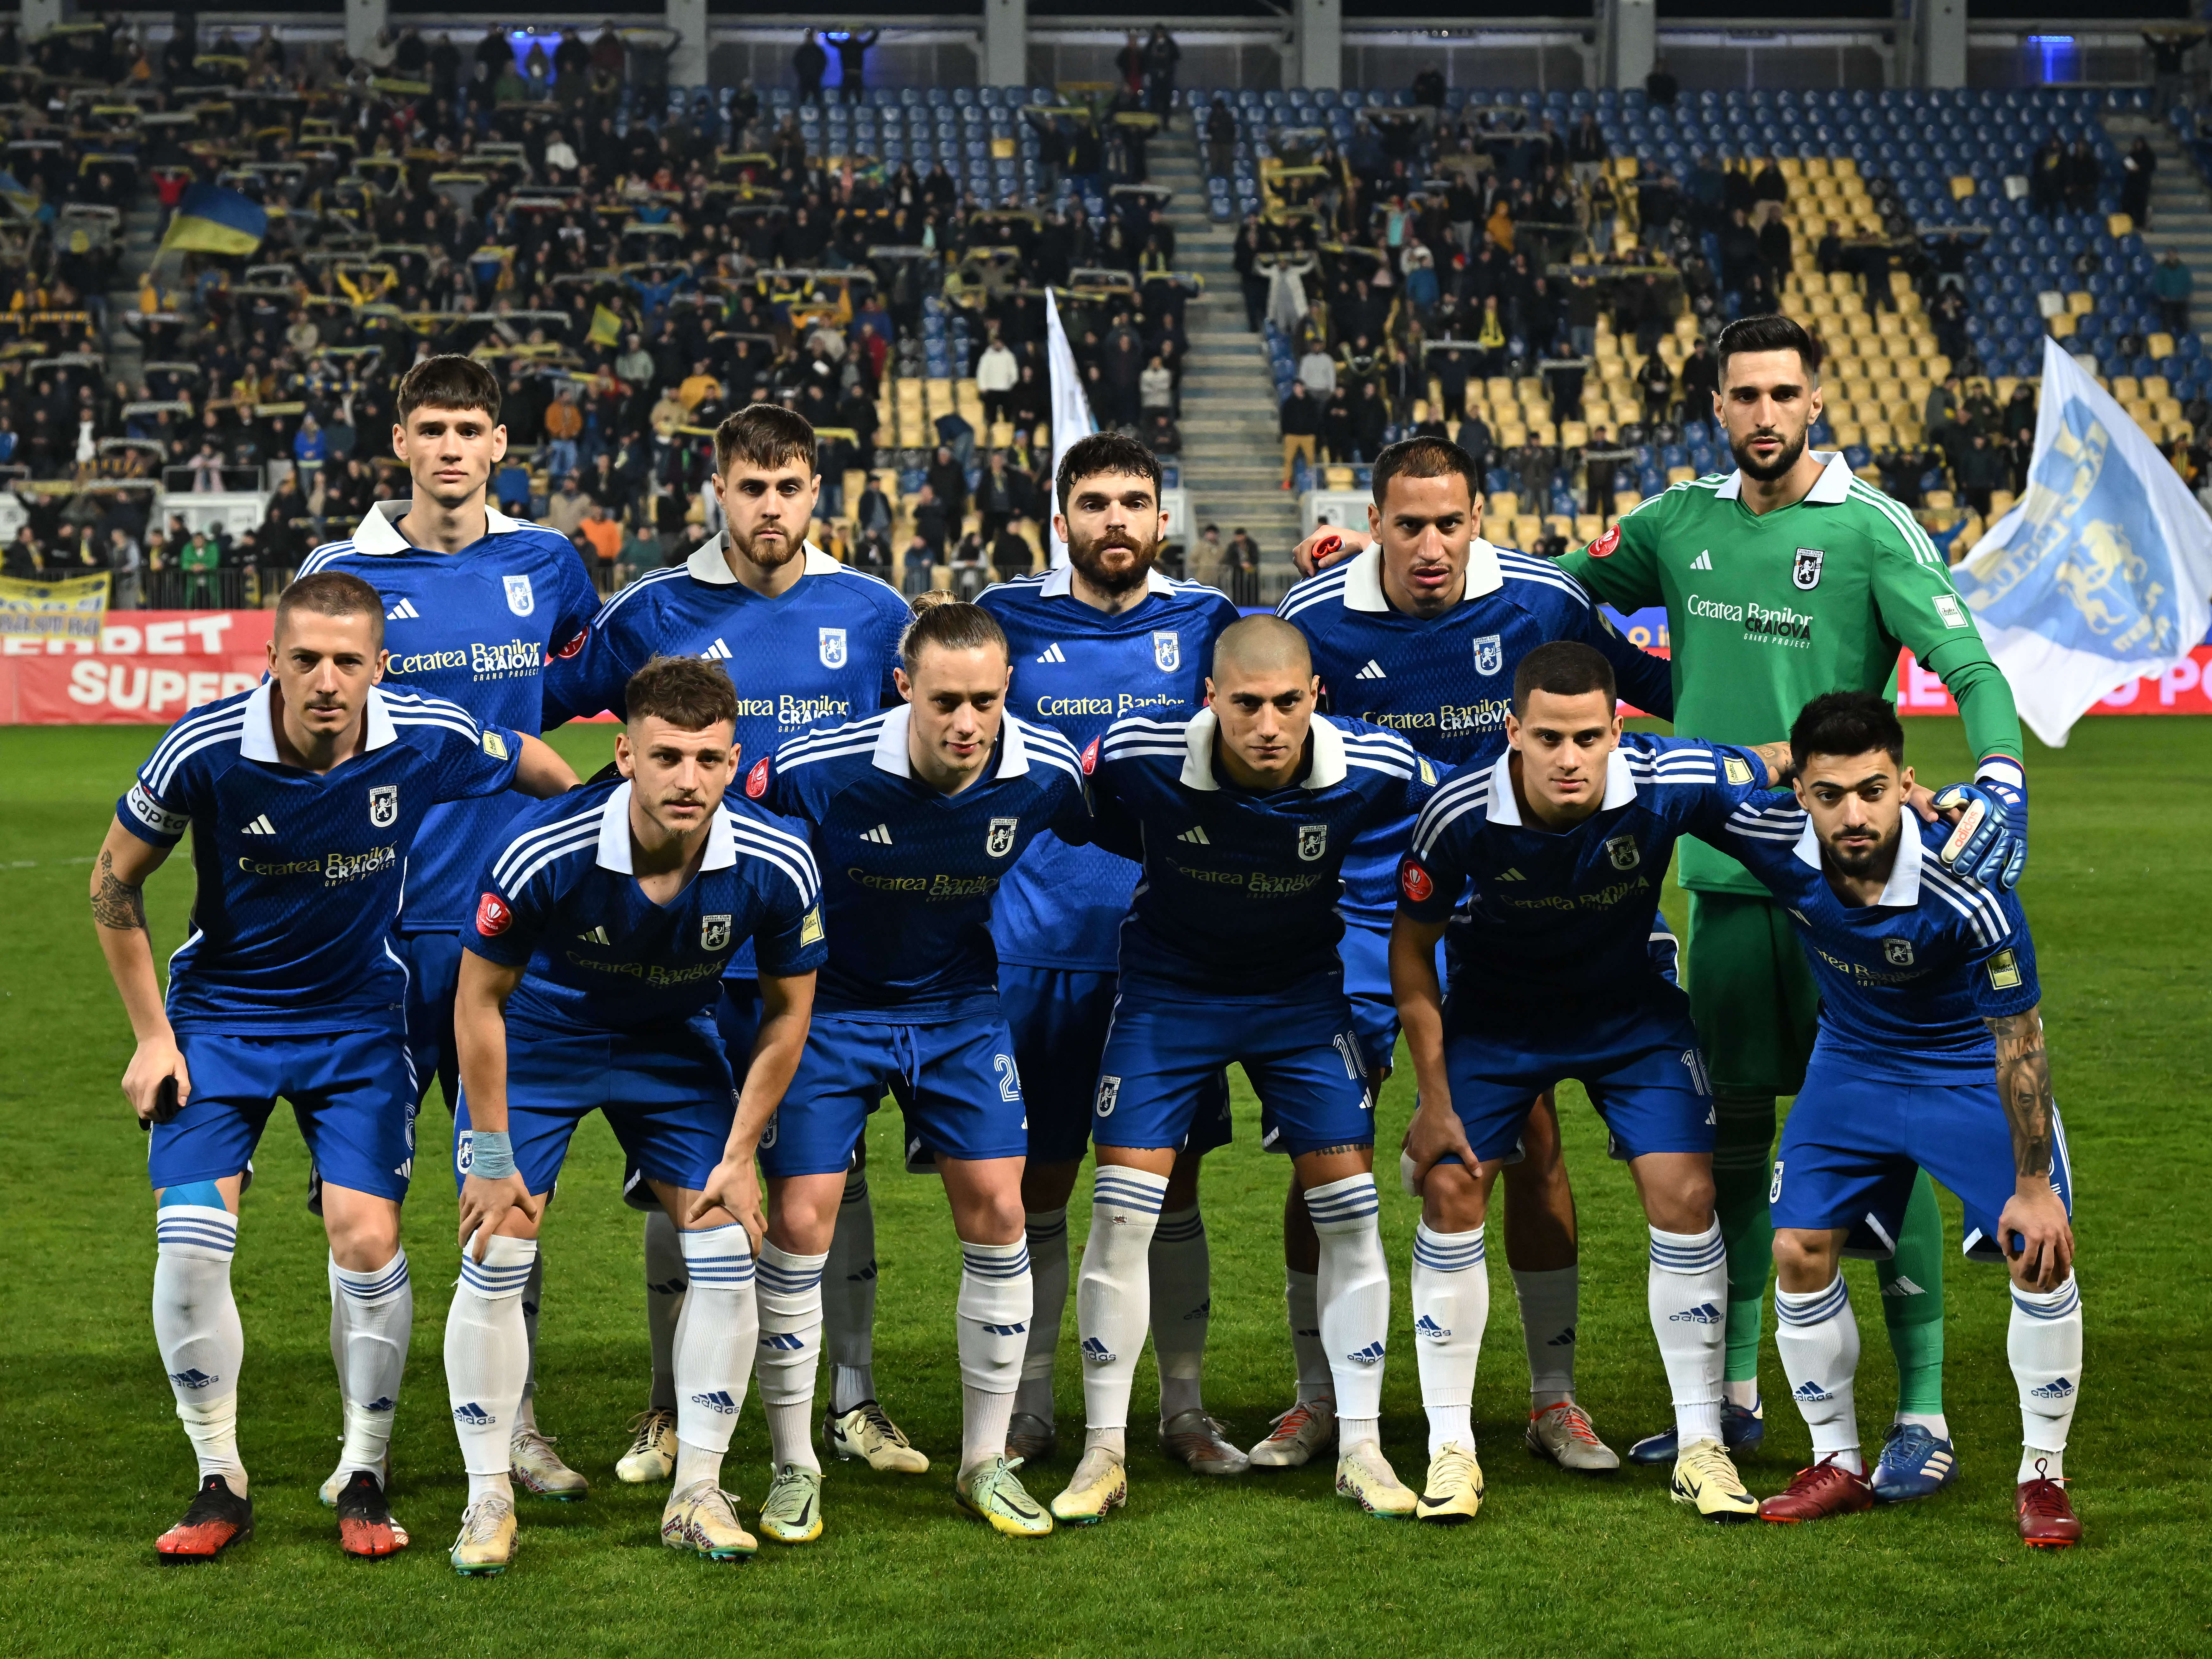 Țipete din vestiarul celor de la FCU Craiova după eșecul de la Ploiești: ”Frustrarea e mare”